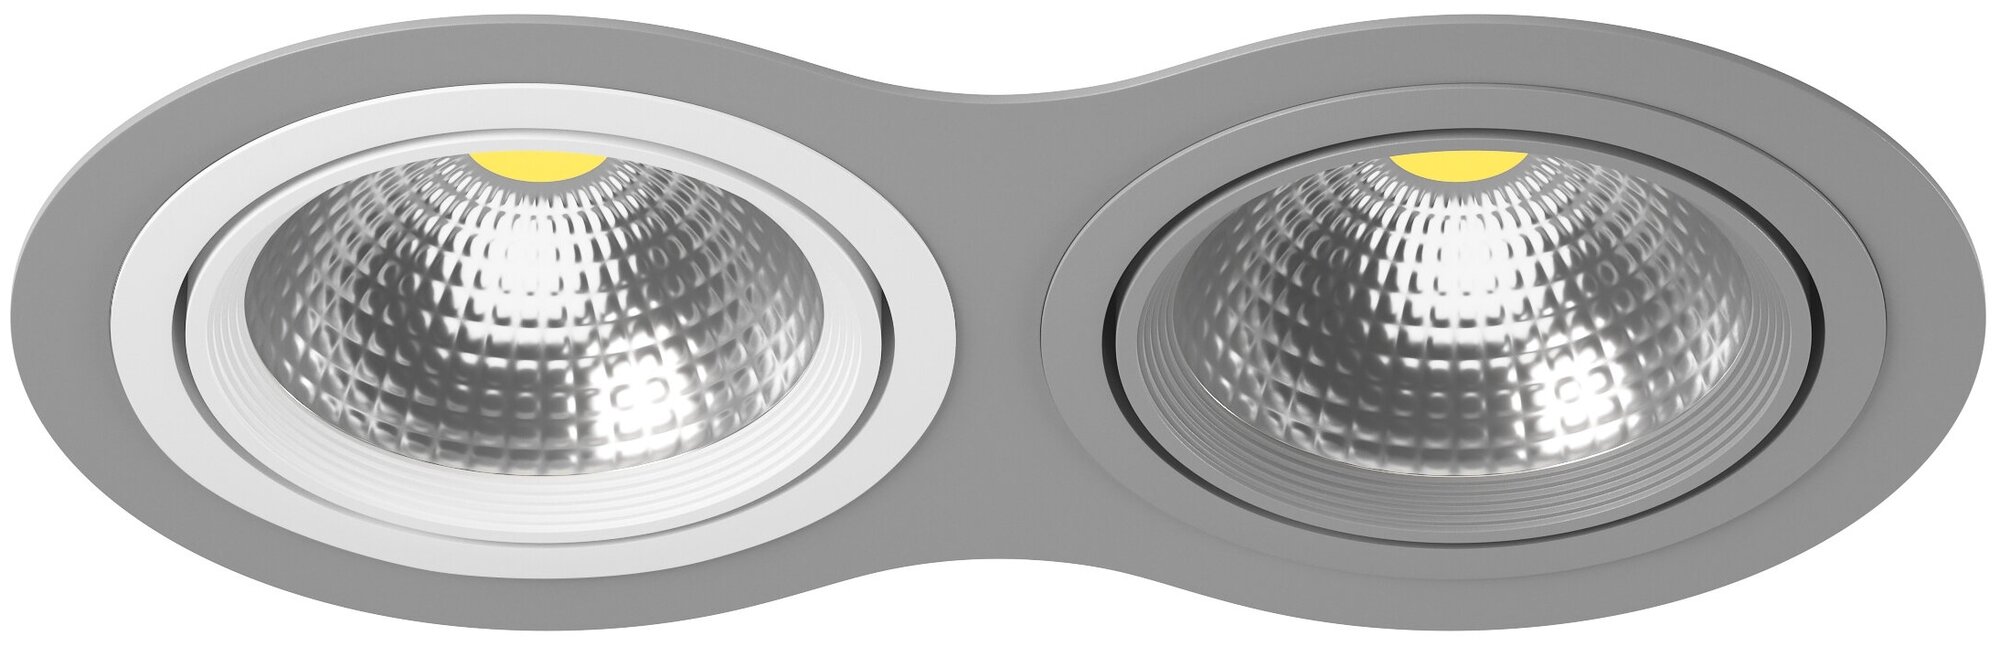 Точечный светильник встроенный серый Lightstar Intero 111 i9290609